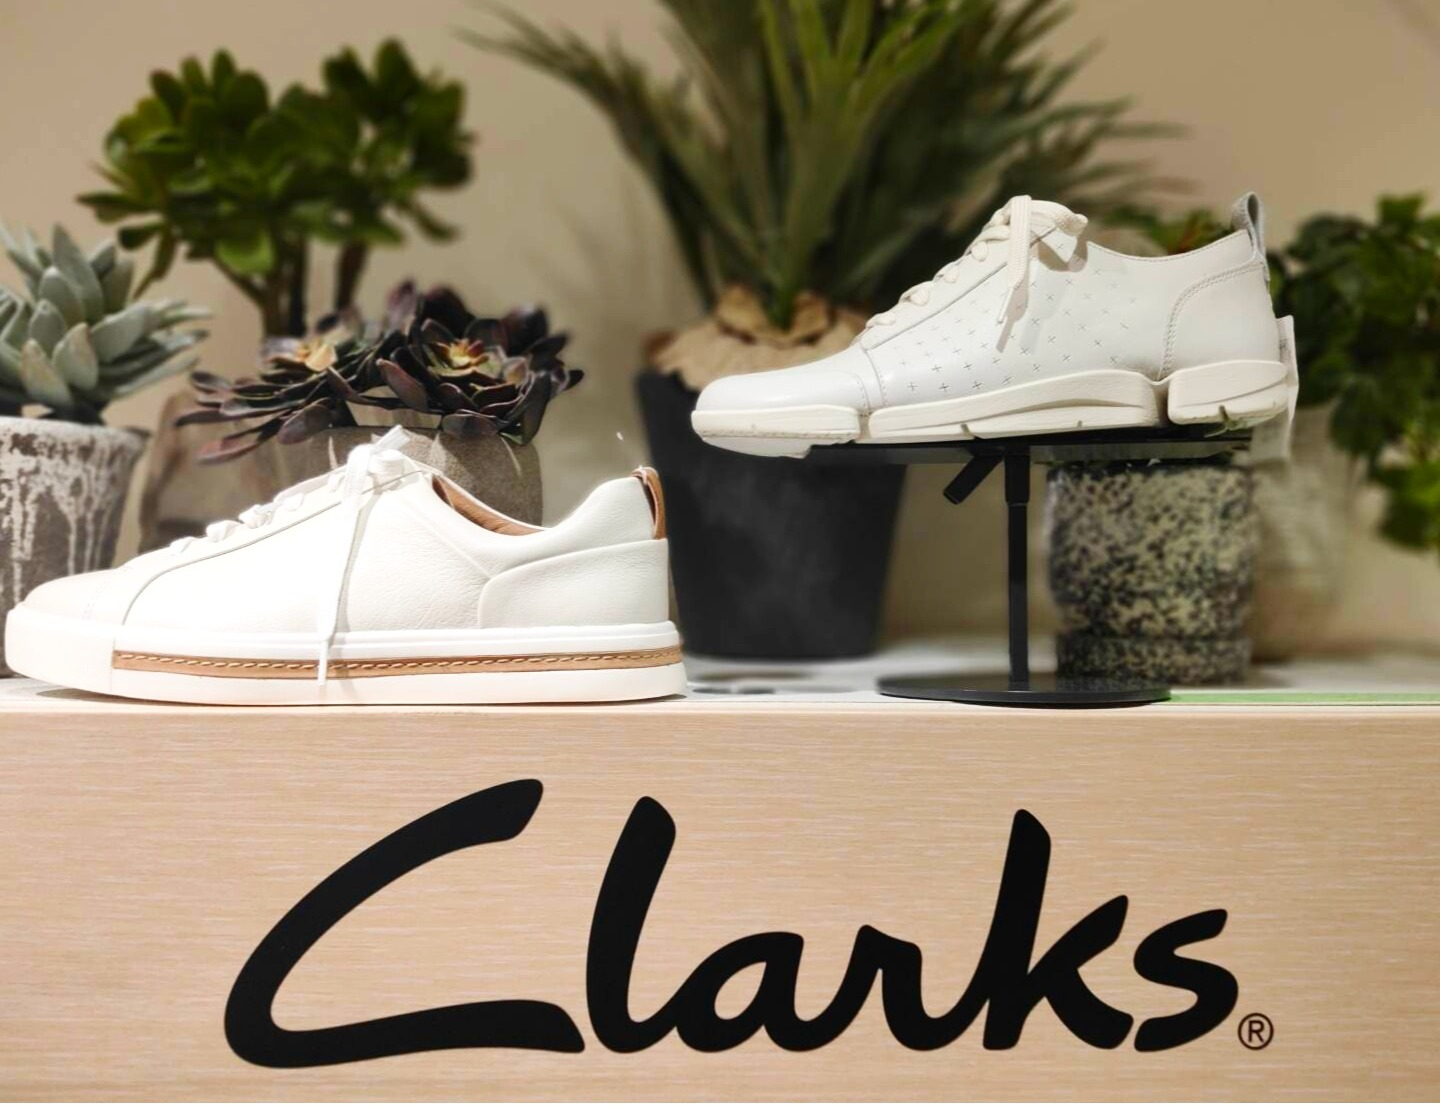 Clarks人气No.1运动鞋❗